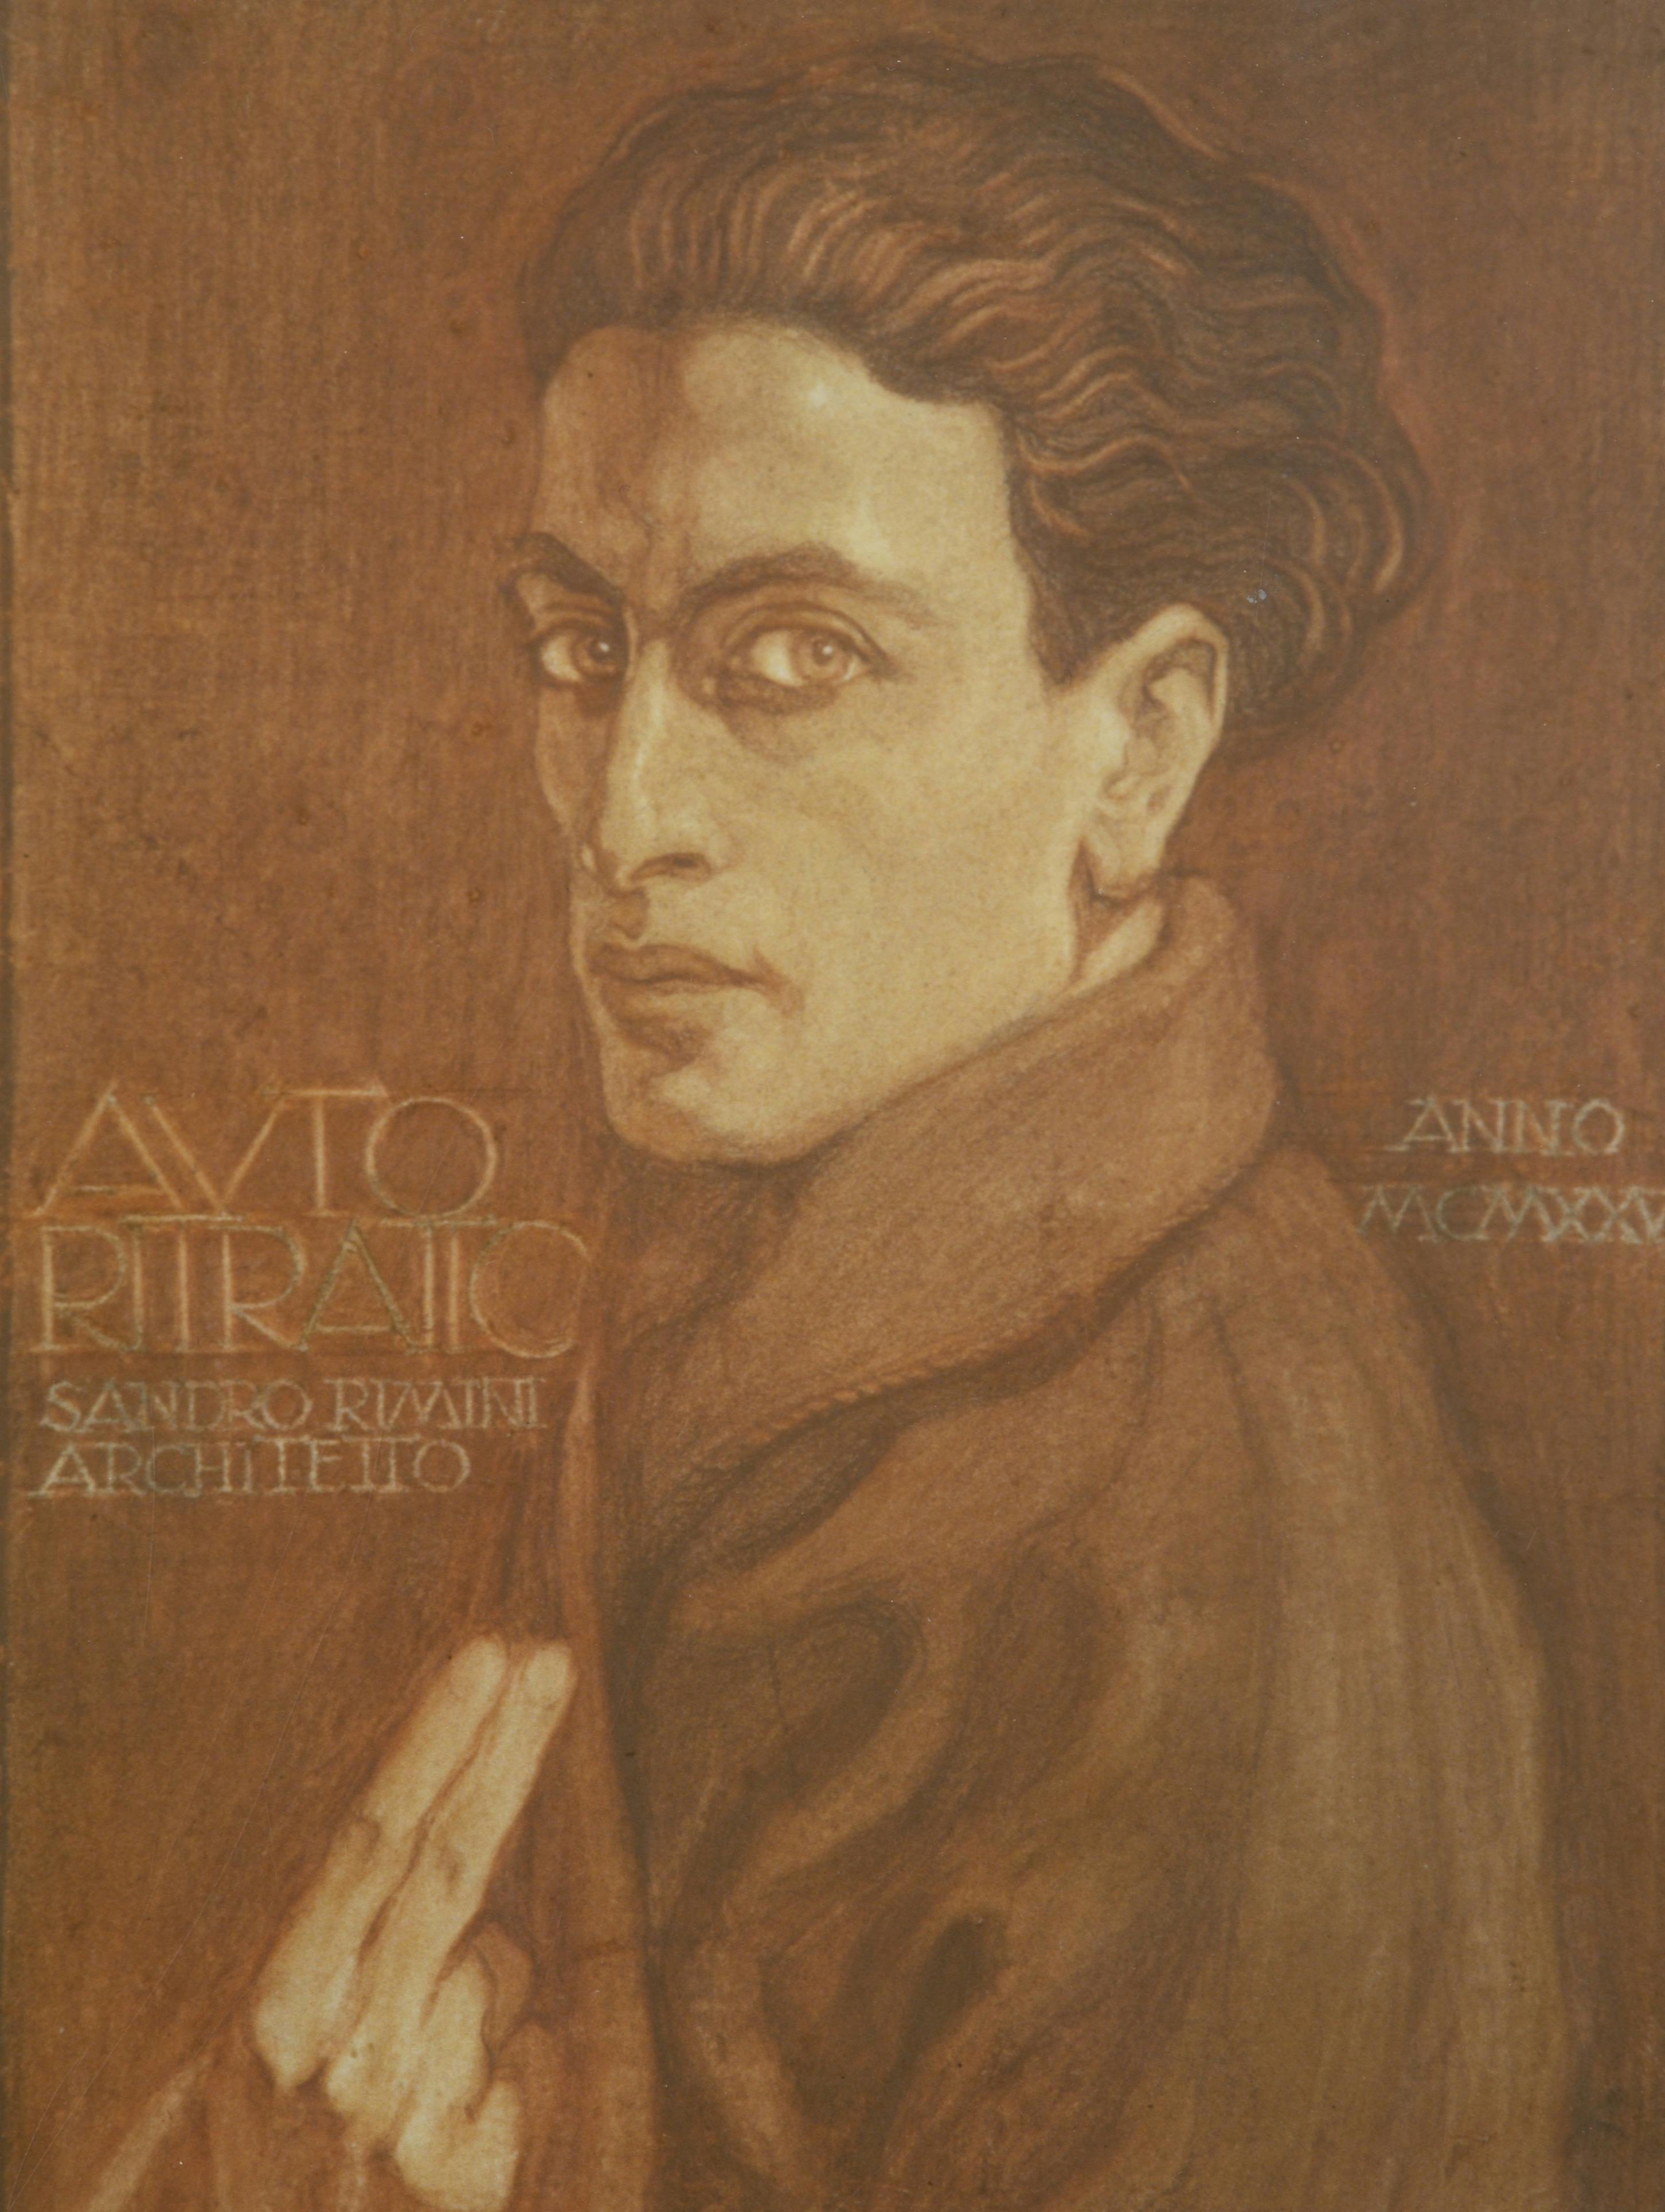 Alessandro Rimini, Autoritratto, 1925